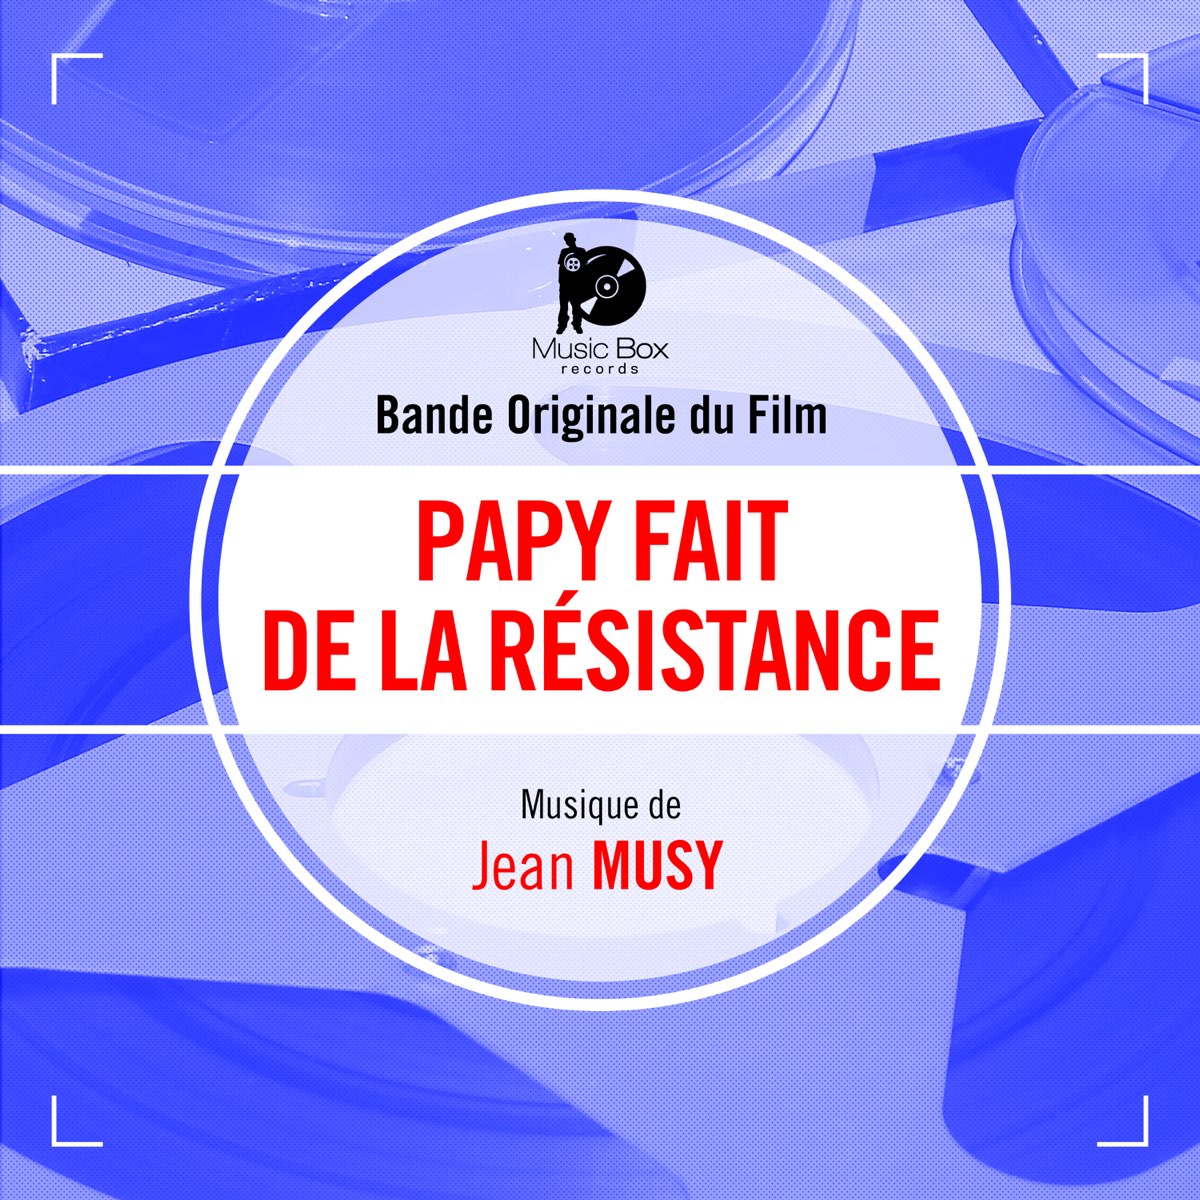 Papy fait de la résistance (Bande originale du film) - Single – Album par  Jean Musy – Apple Music